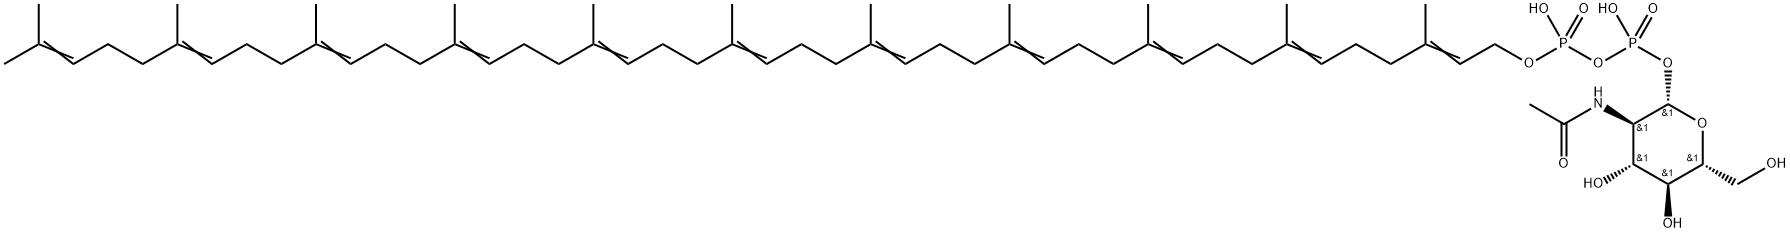 N-acetylglucosamine-pyrophosphorylundecaprenol|